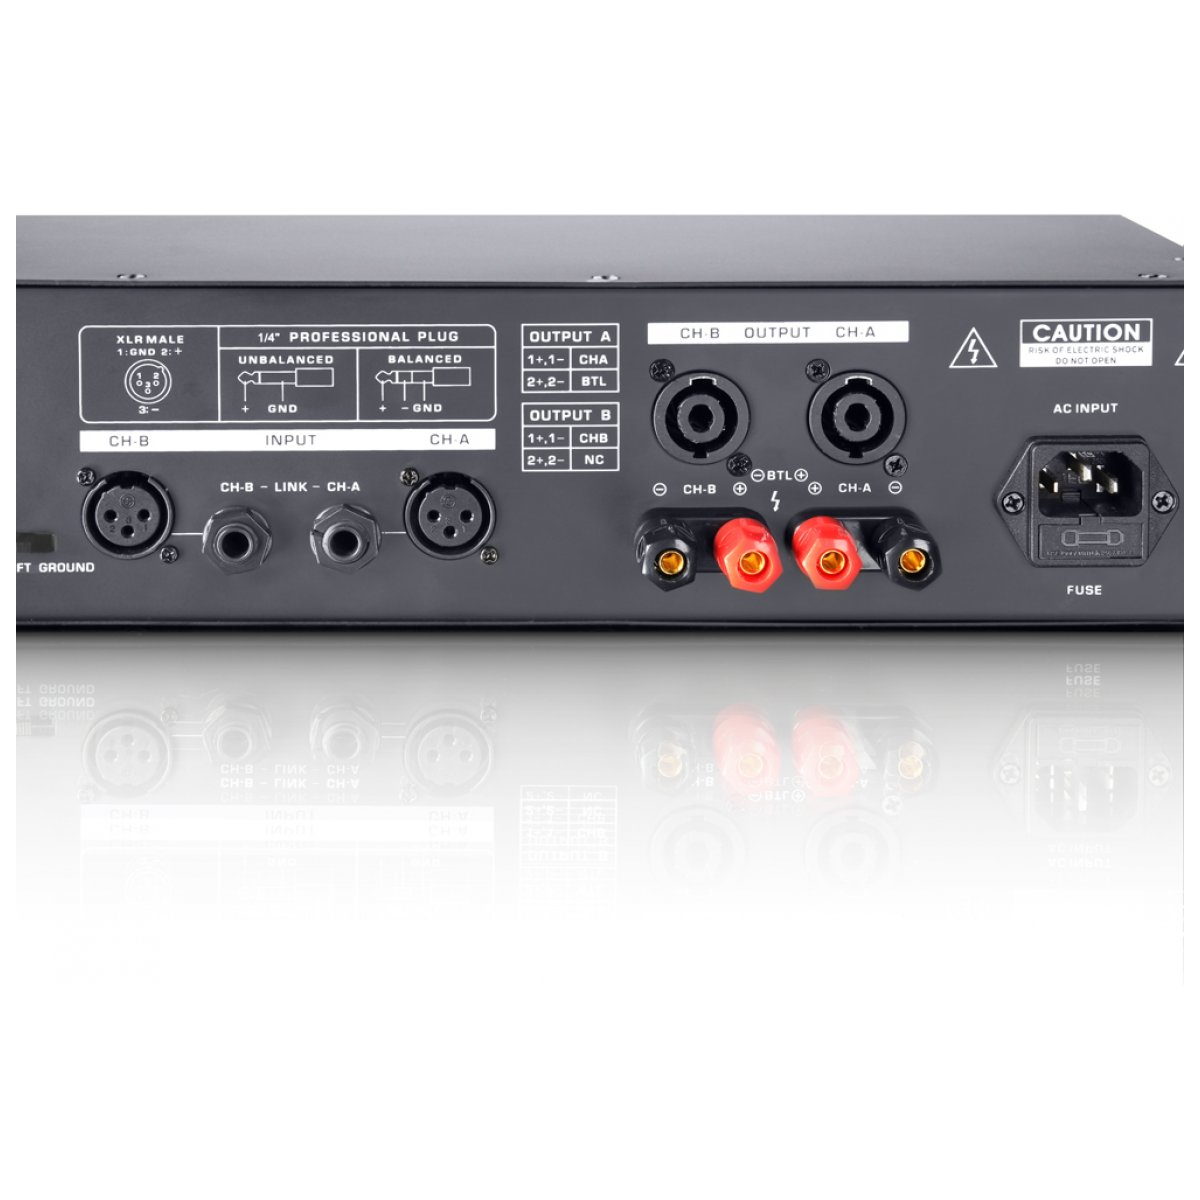 Мощность 500 дж. LD Systems dj500 Power Amplifier. LD 500. 800 Усилитель мощности концертный. LD Systems DJ 500.